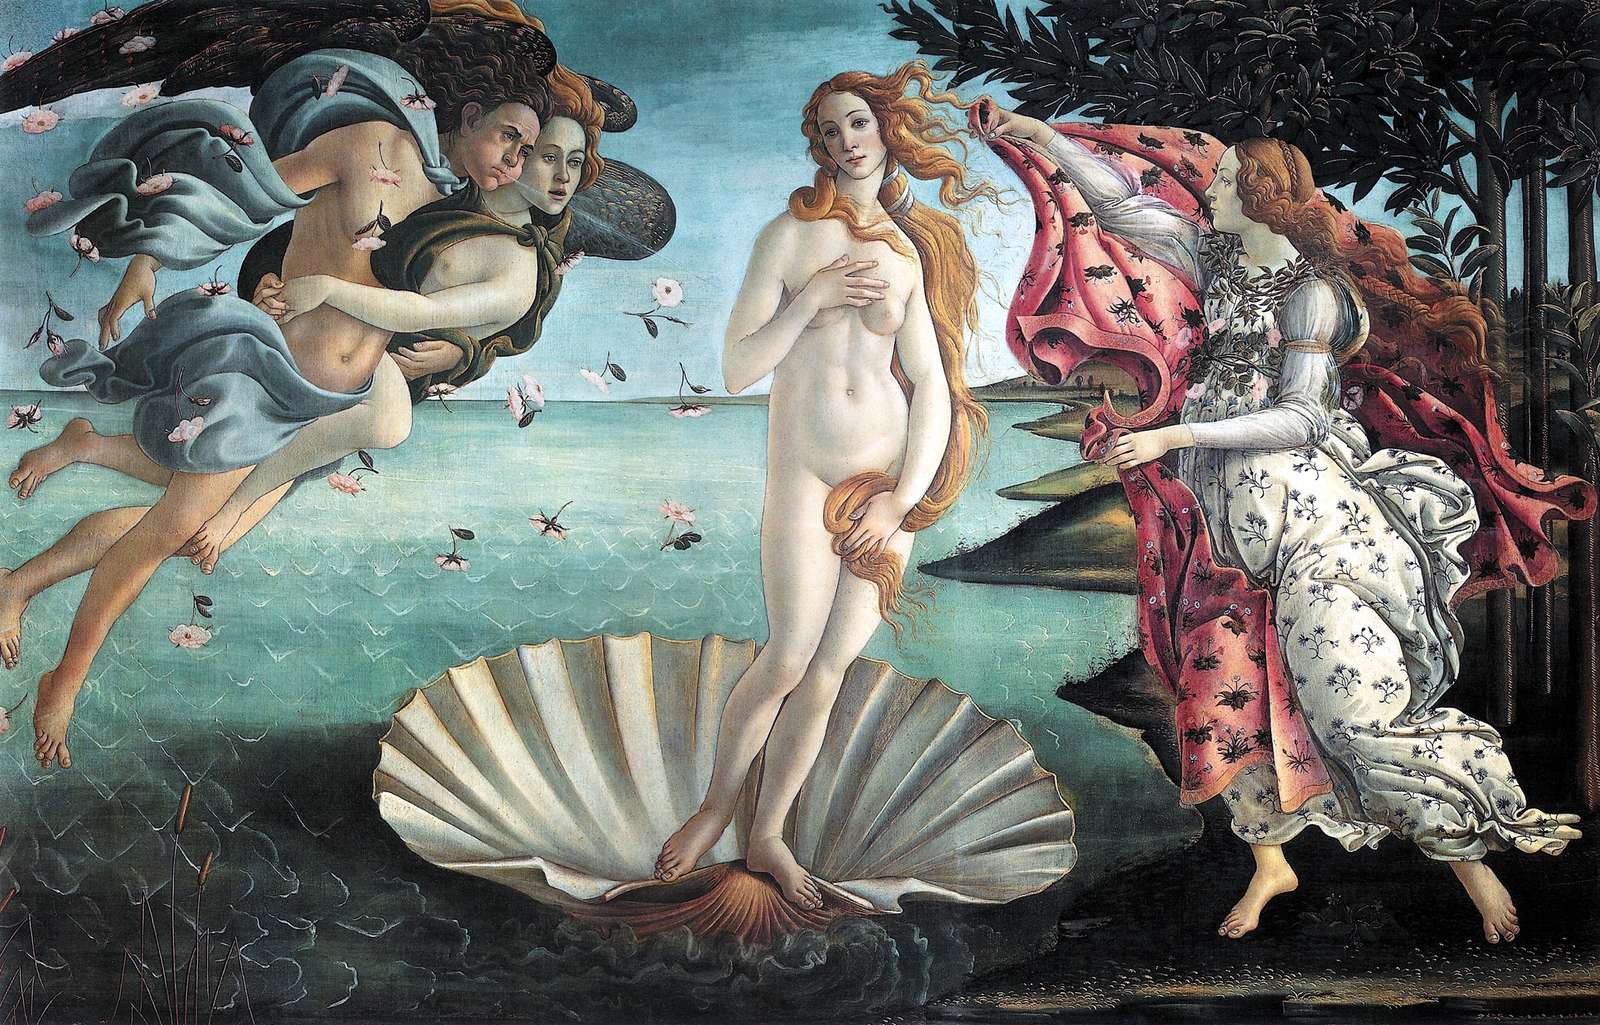 O Nascimento de Vênus - Botticelli puzzle online a partir de fotografia